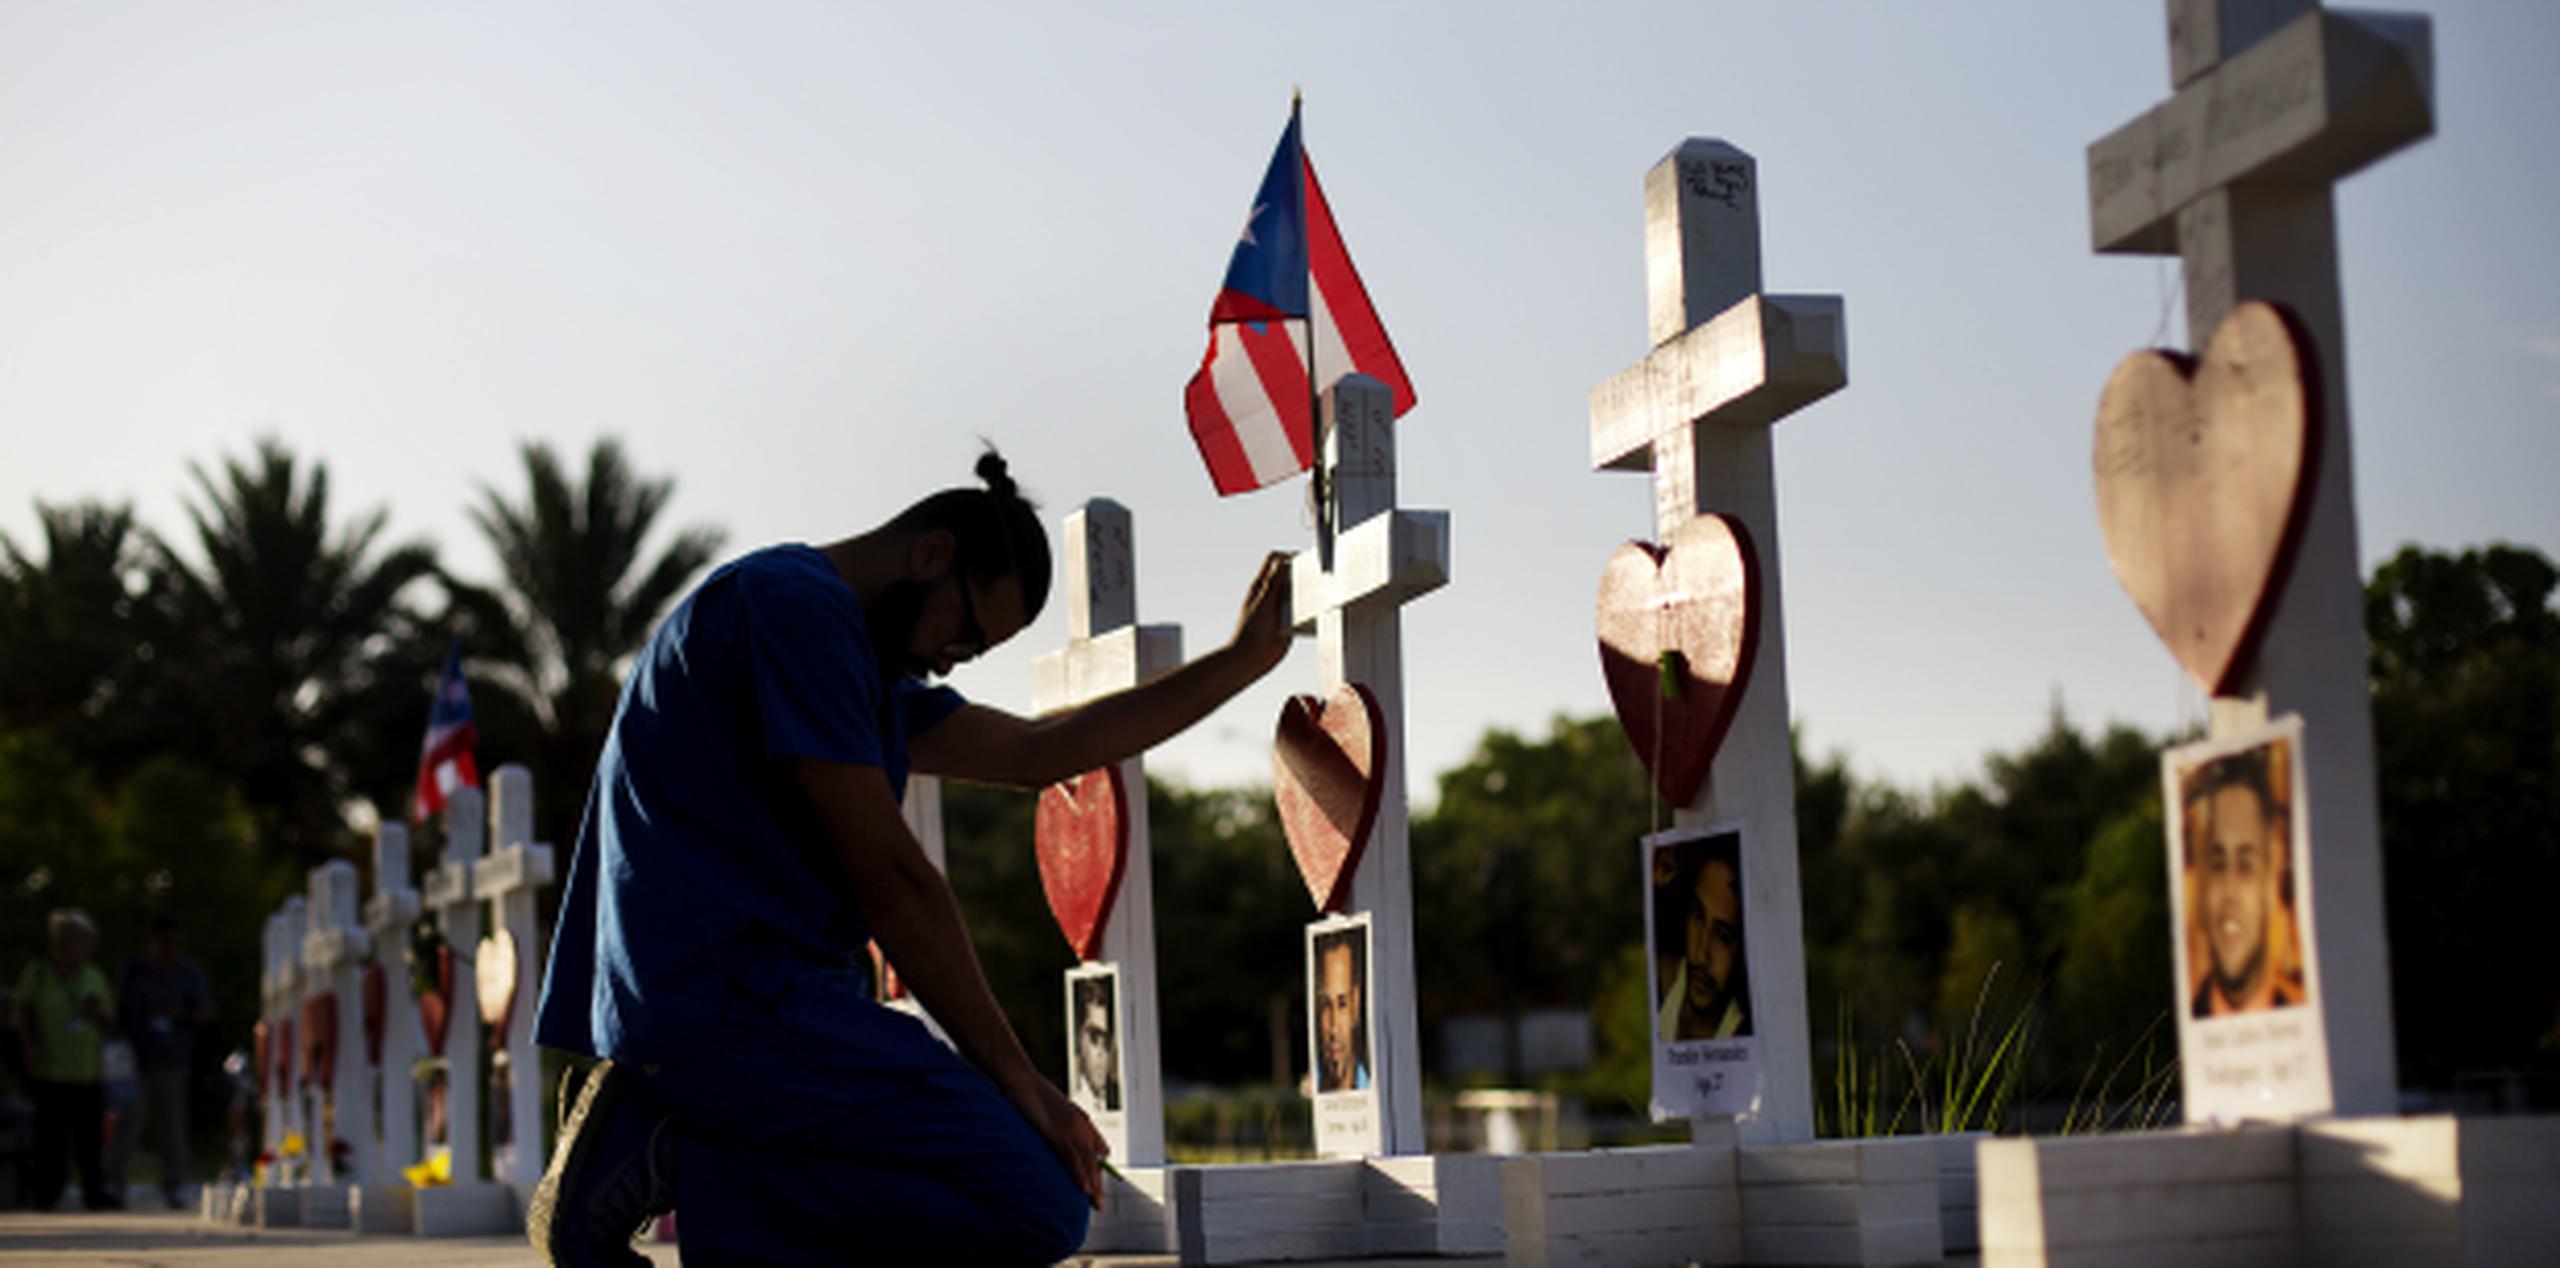 Ernesto Vergne reza en la cruz en hono a Xavier Emmanuel Serrano Rosado y otras víctimas. (Prensa Asociada)